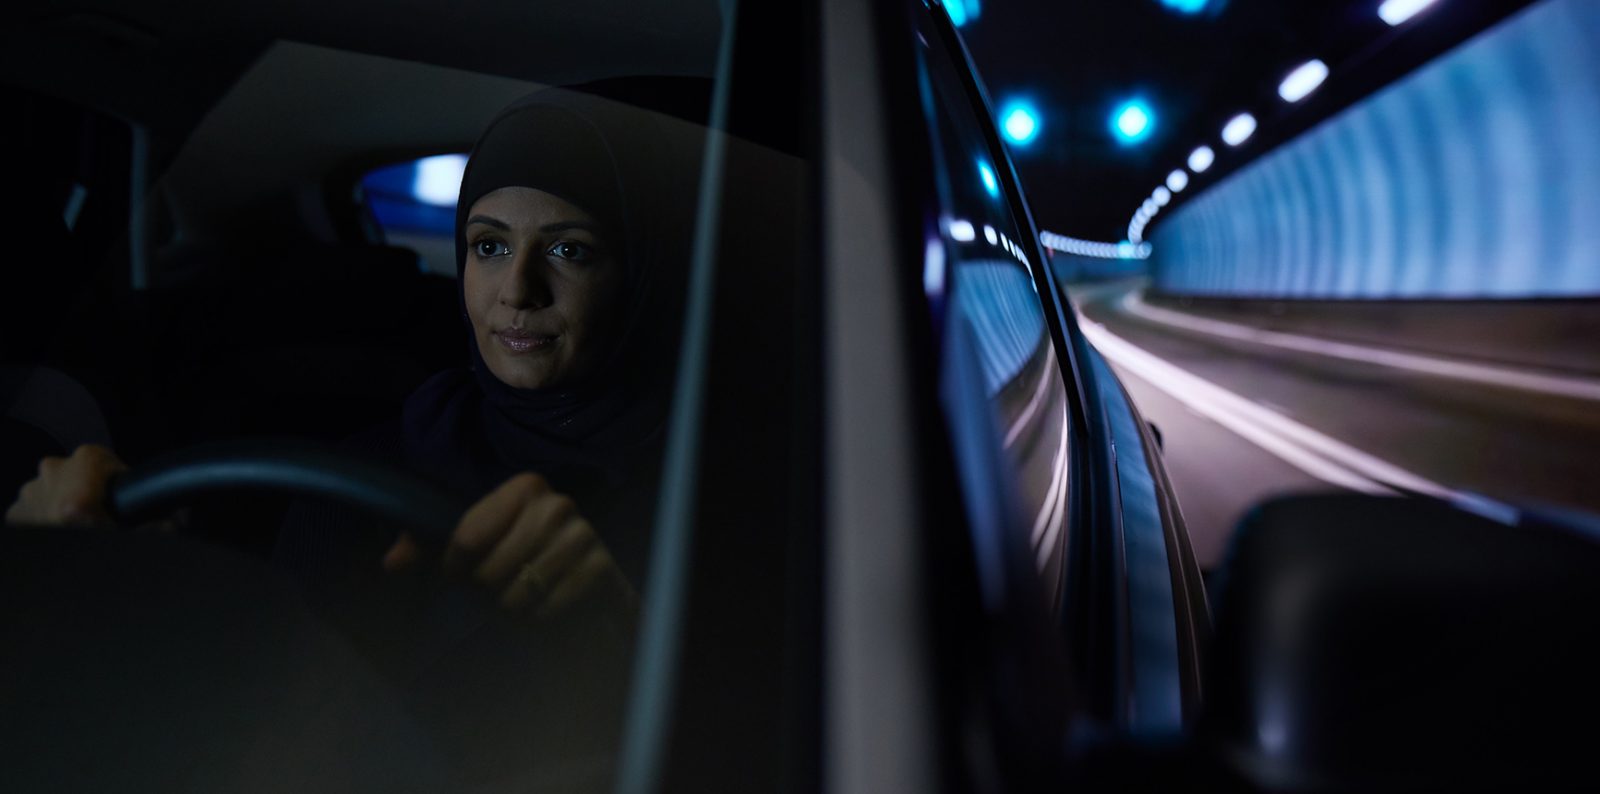 Saudi women drivers | Hyundai #WhatsNext